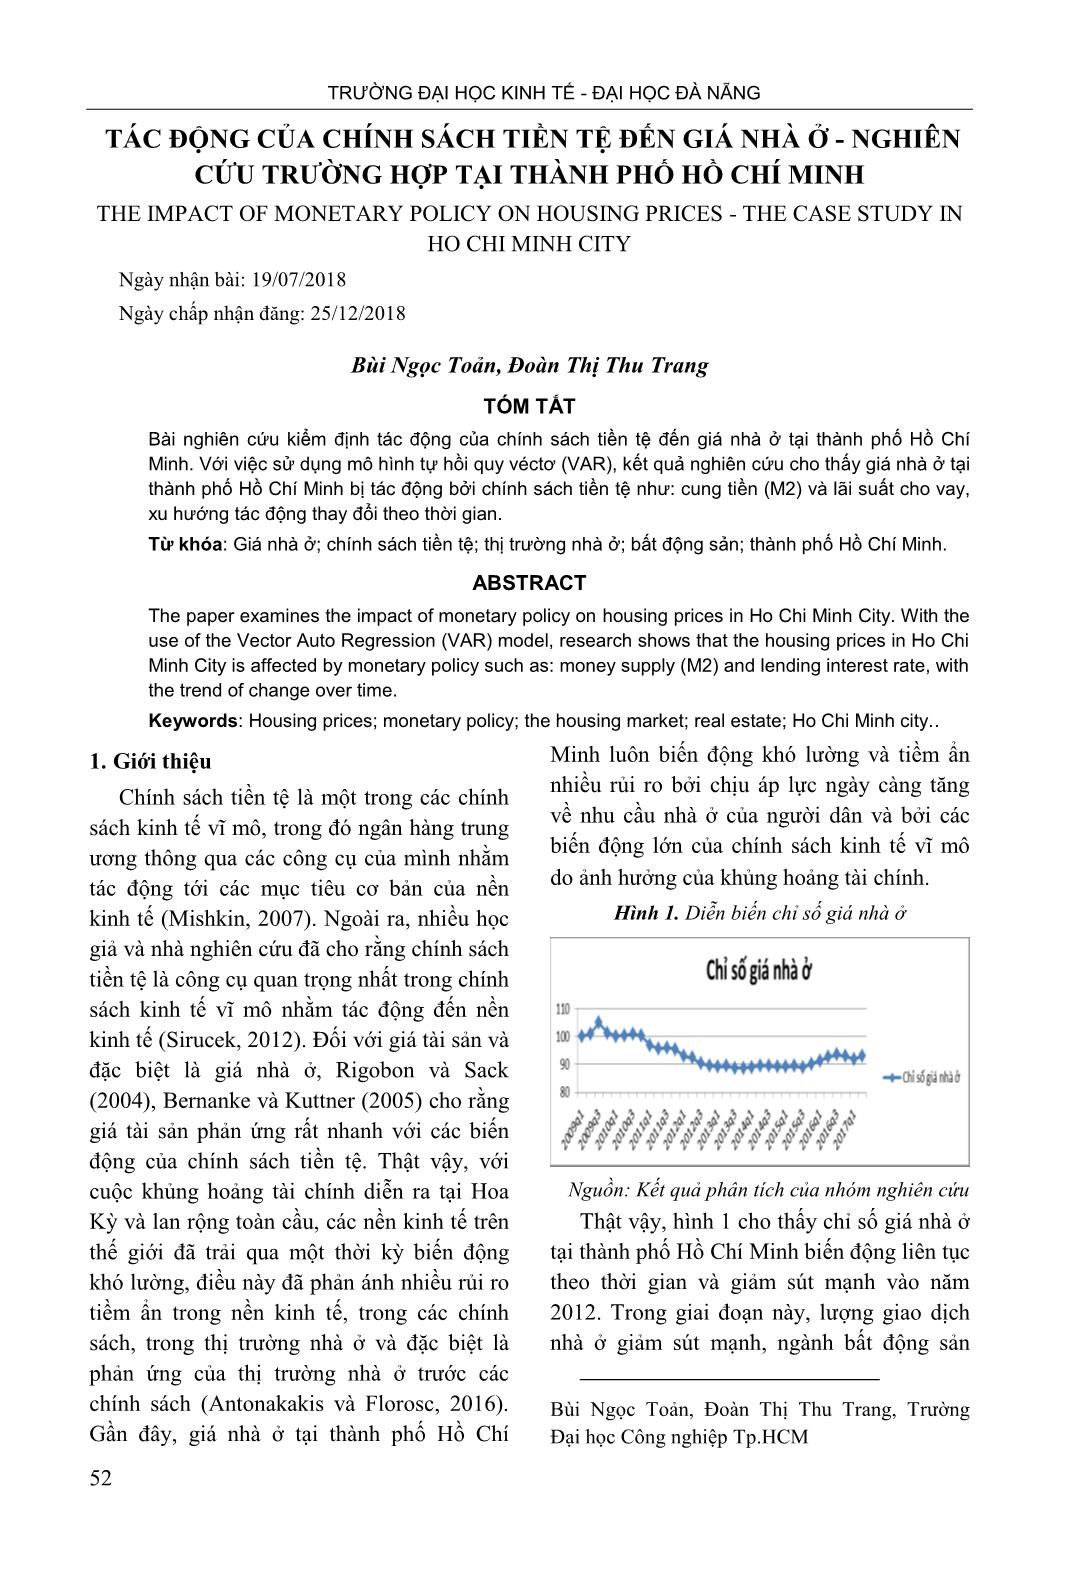 Tác động của chính sách tiền tệ đến giá nhà ở - Nghiên cứu trường hợp tại thành phố Hồ Chí Minh trang 1